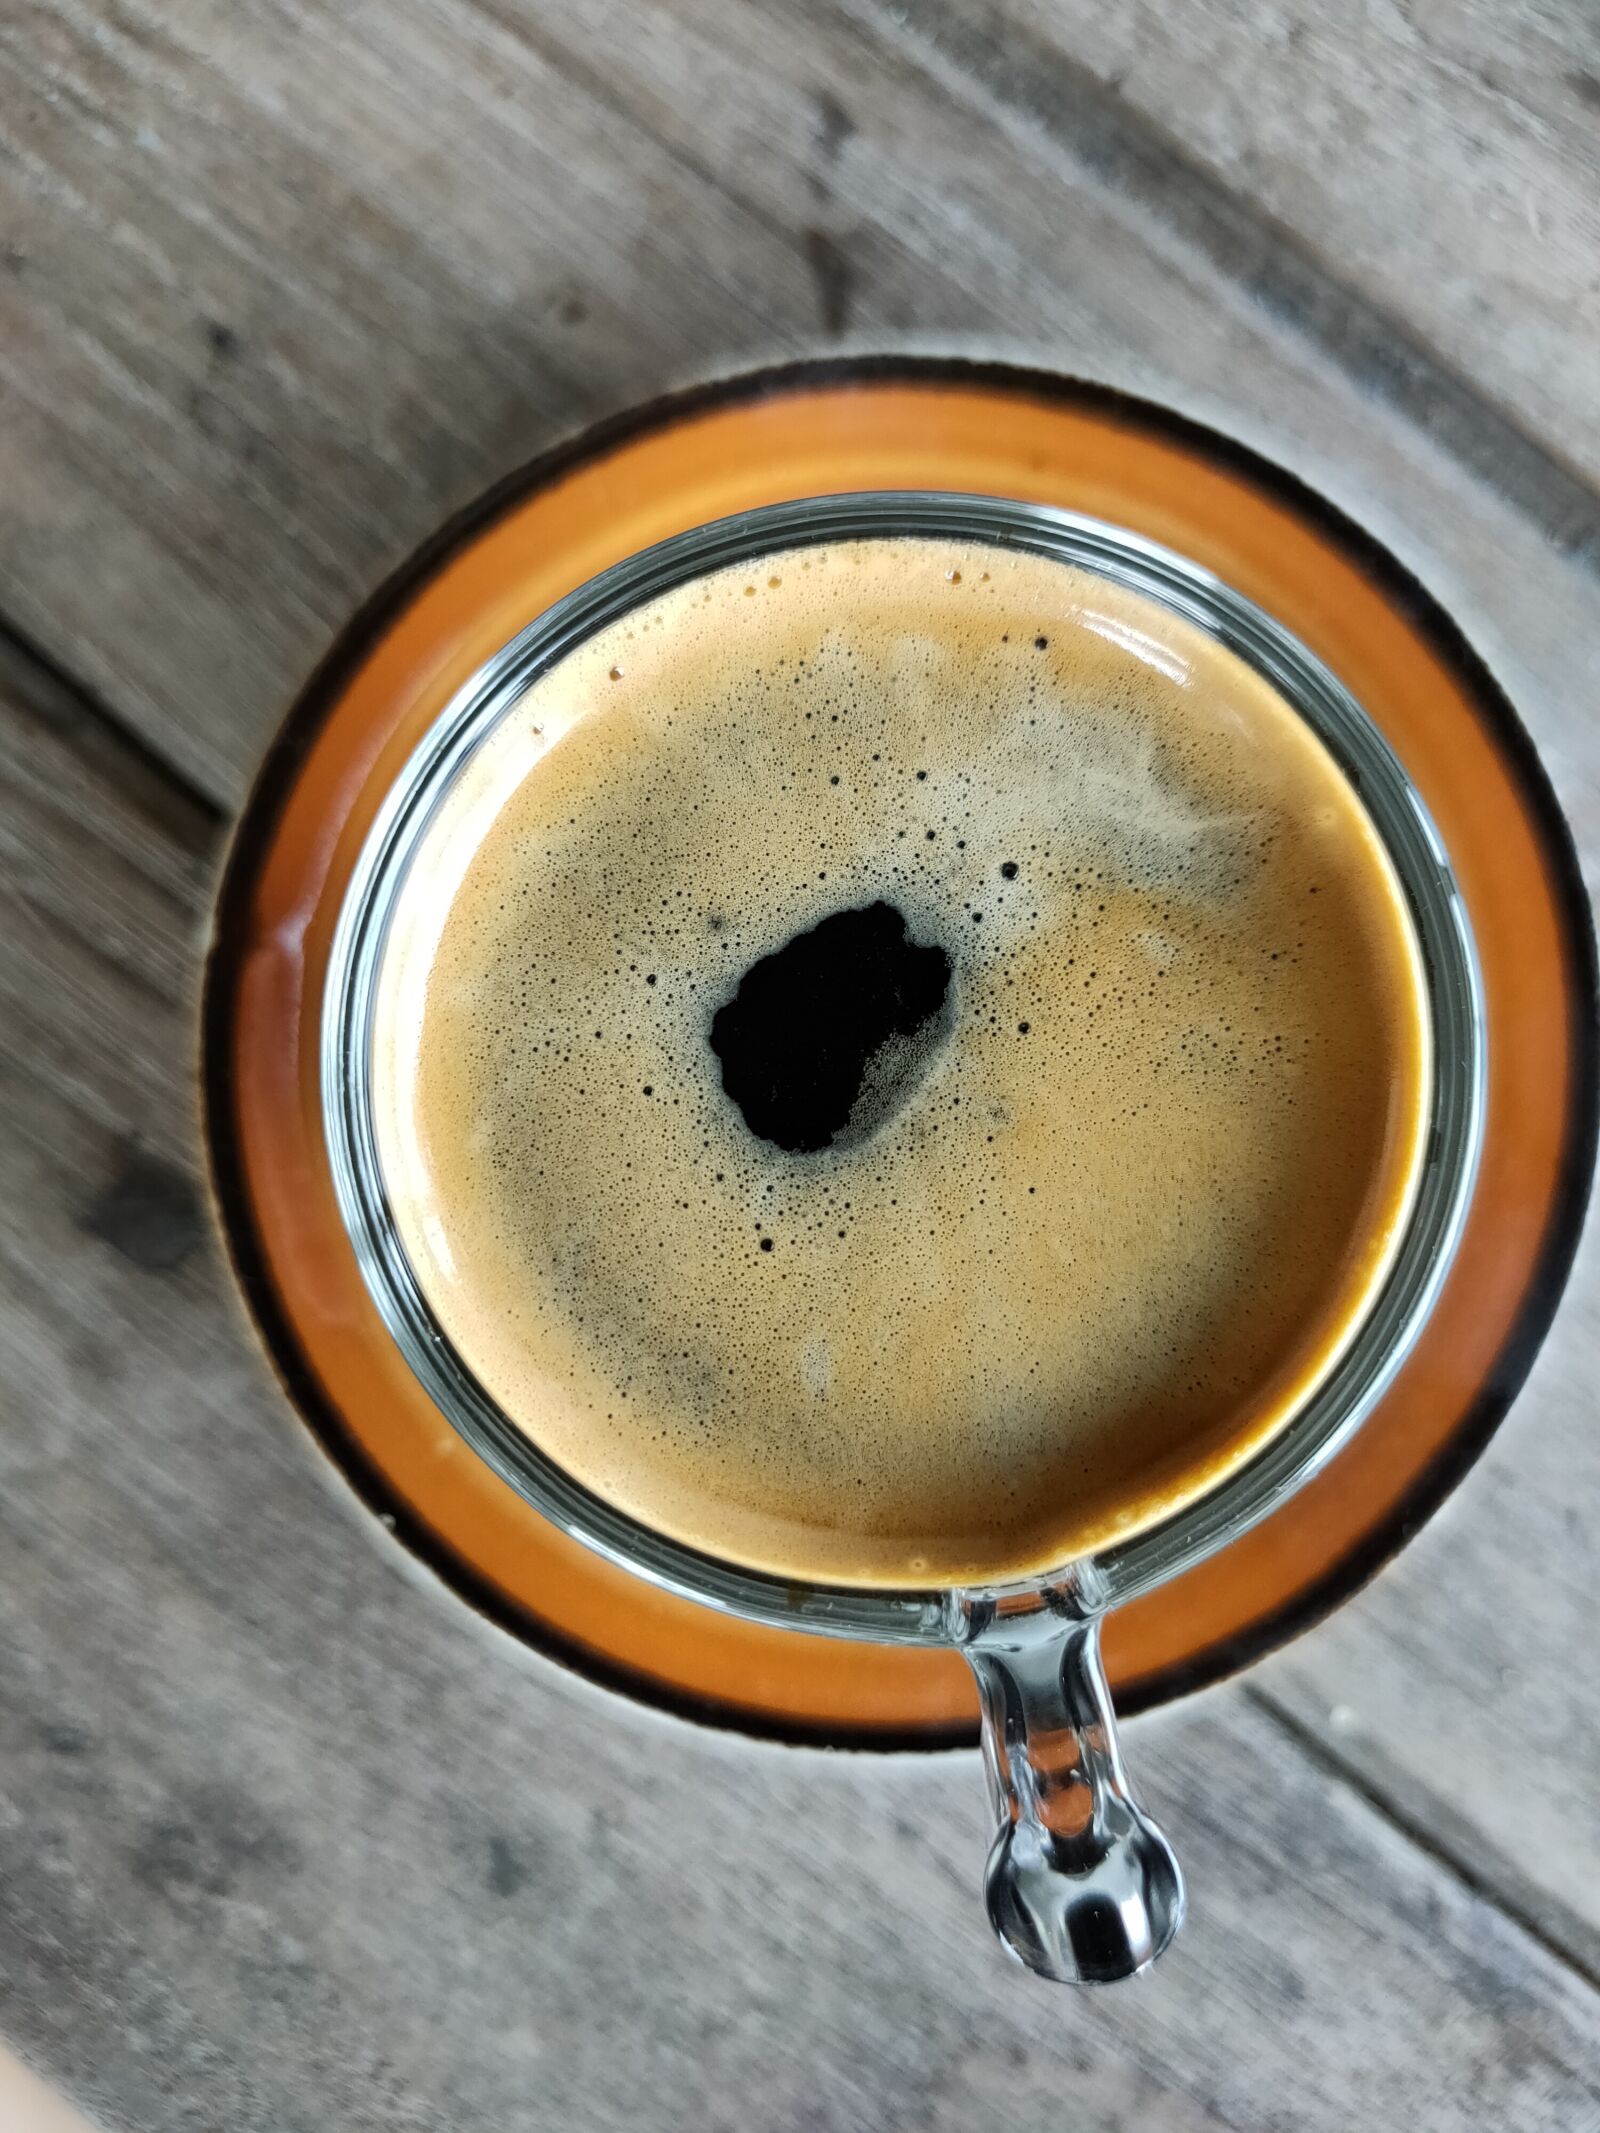 OPPO RENO2 sample photo. Espresso, coffee, black photography